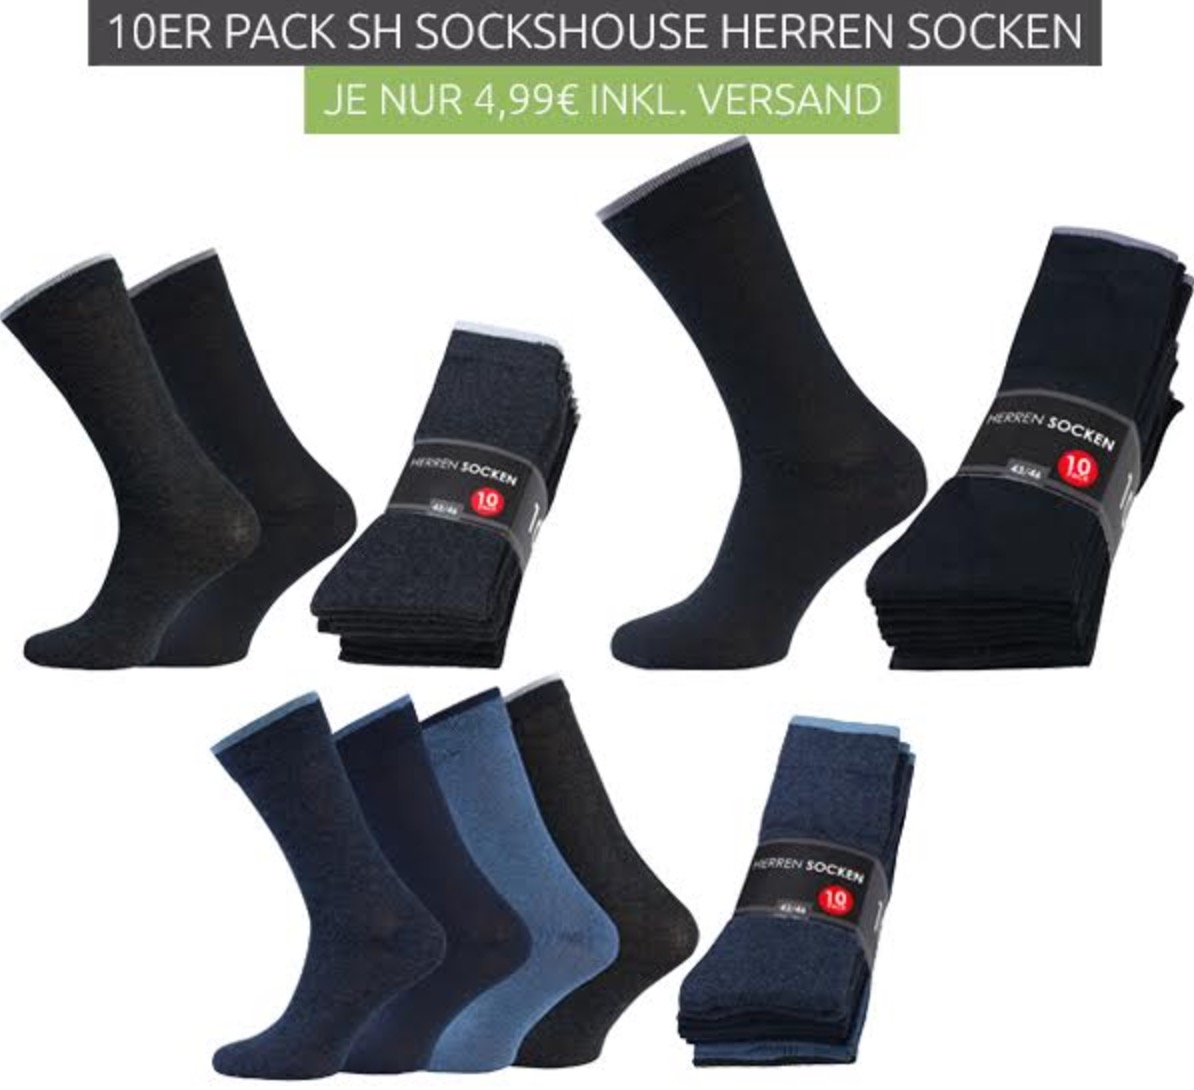 Verschiedene 10er-Packs SH SOCKSHOUSE Herren Business-Socken für nur je 4,99 Euro